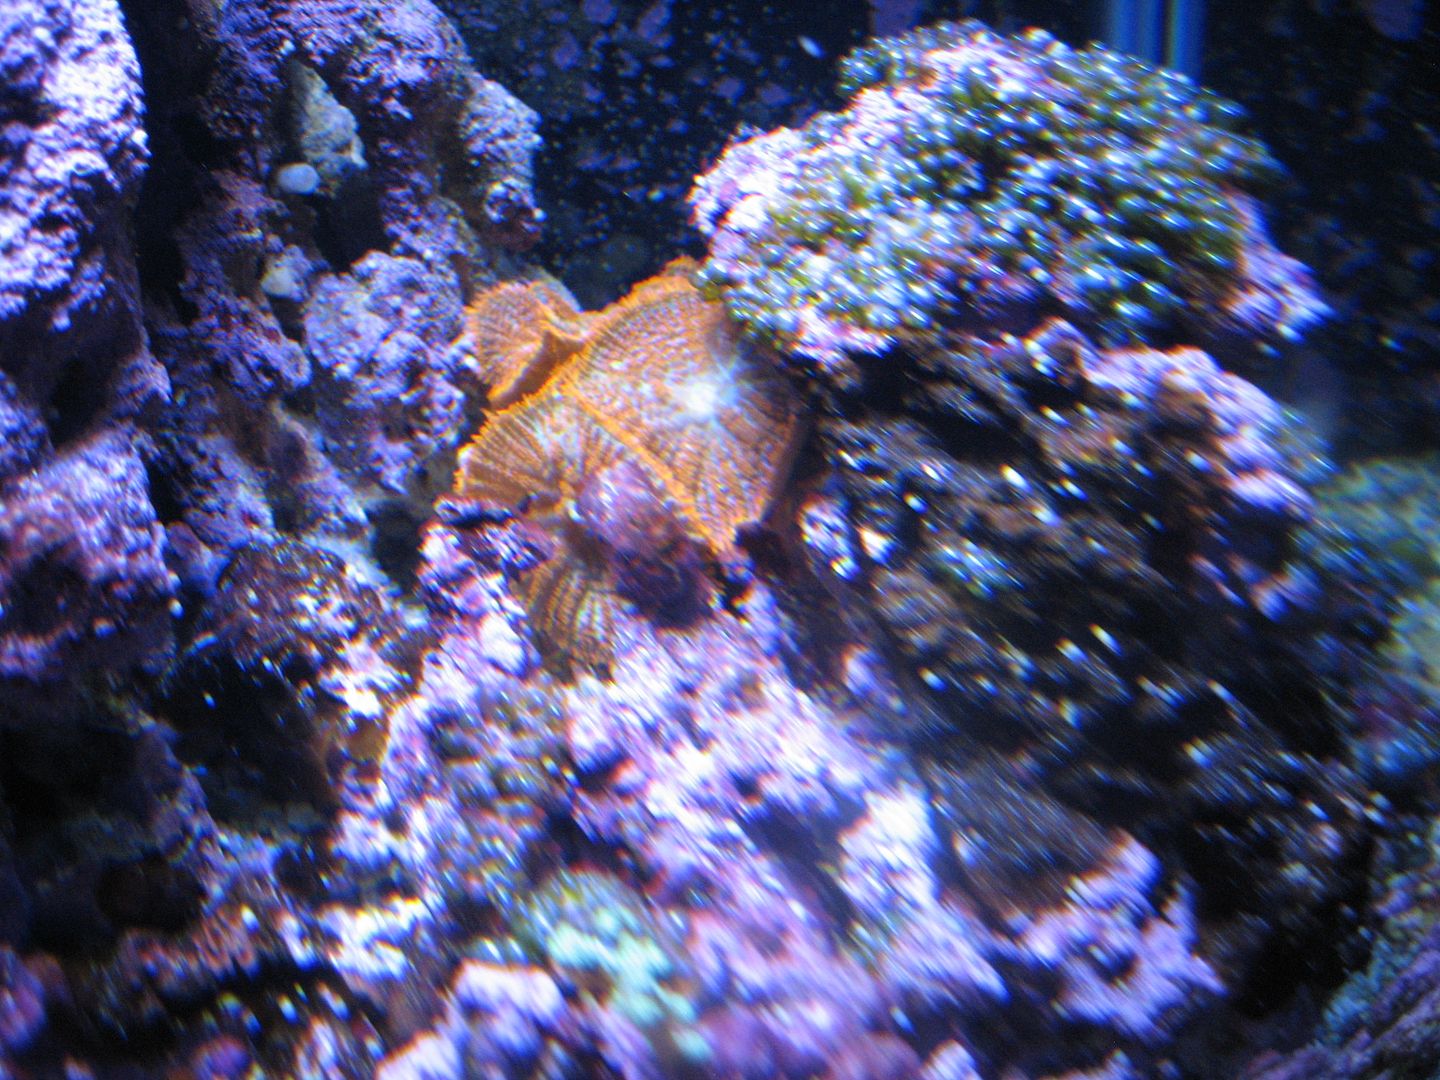 Aquarium_SupermanShroomsClose_07DEC2012.